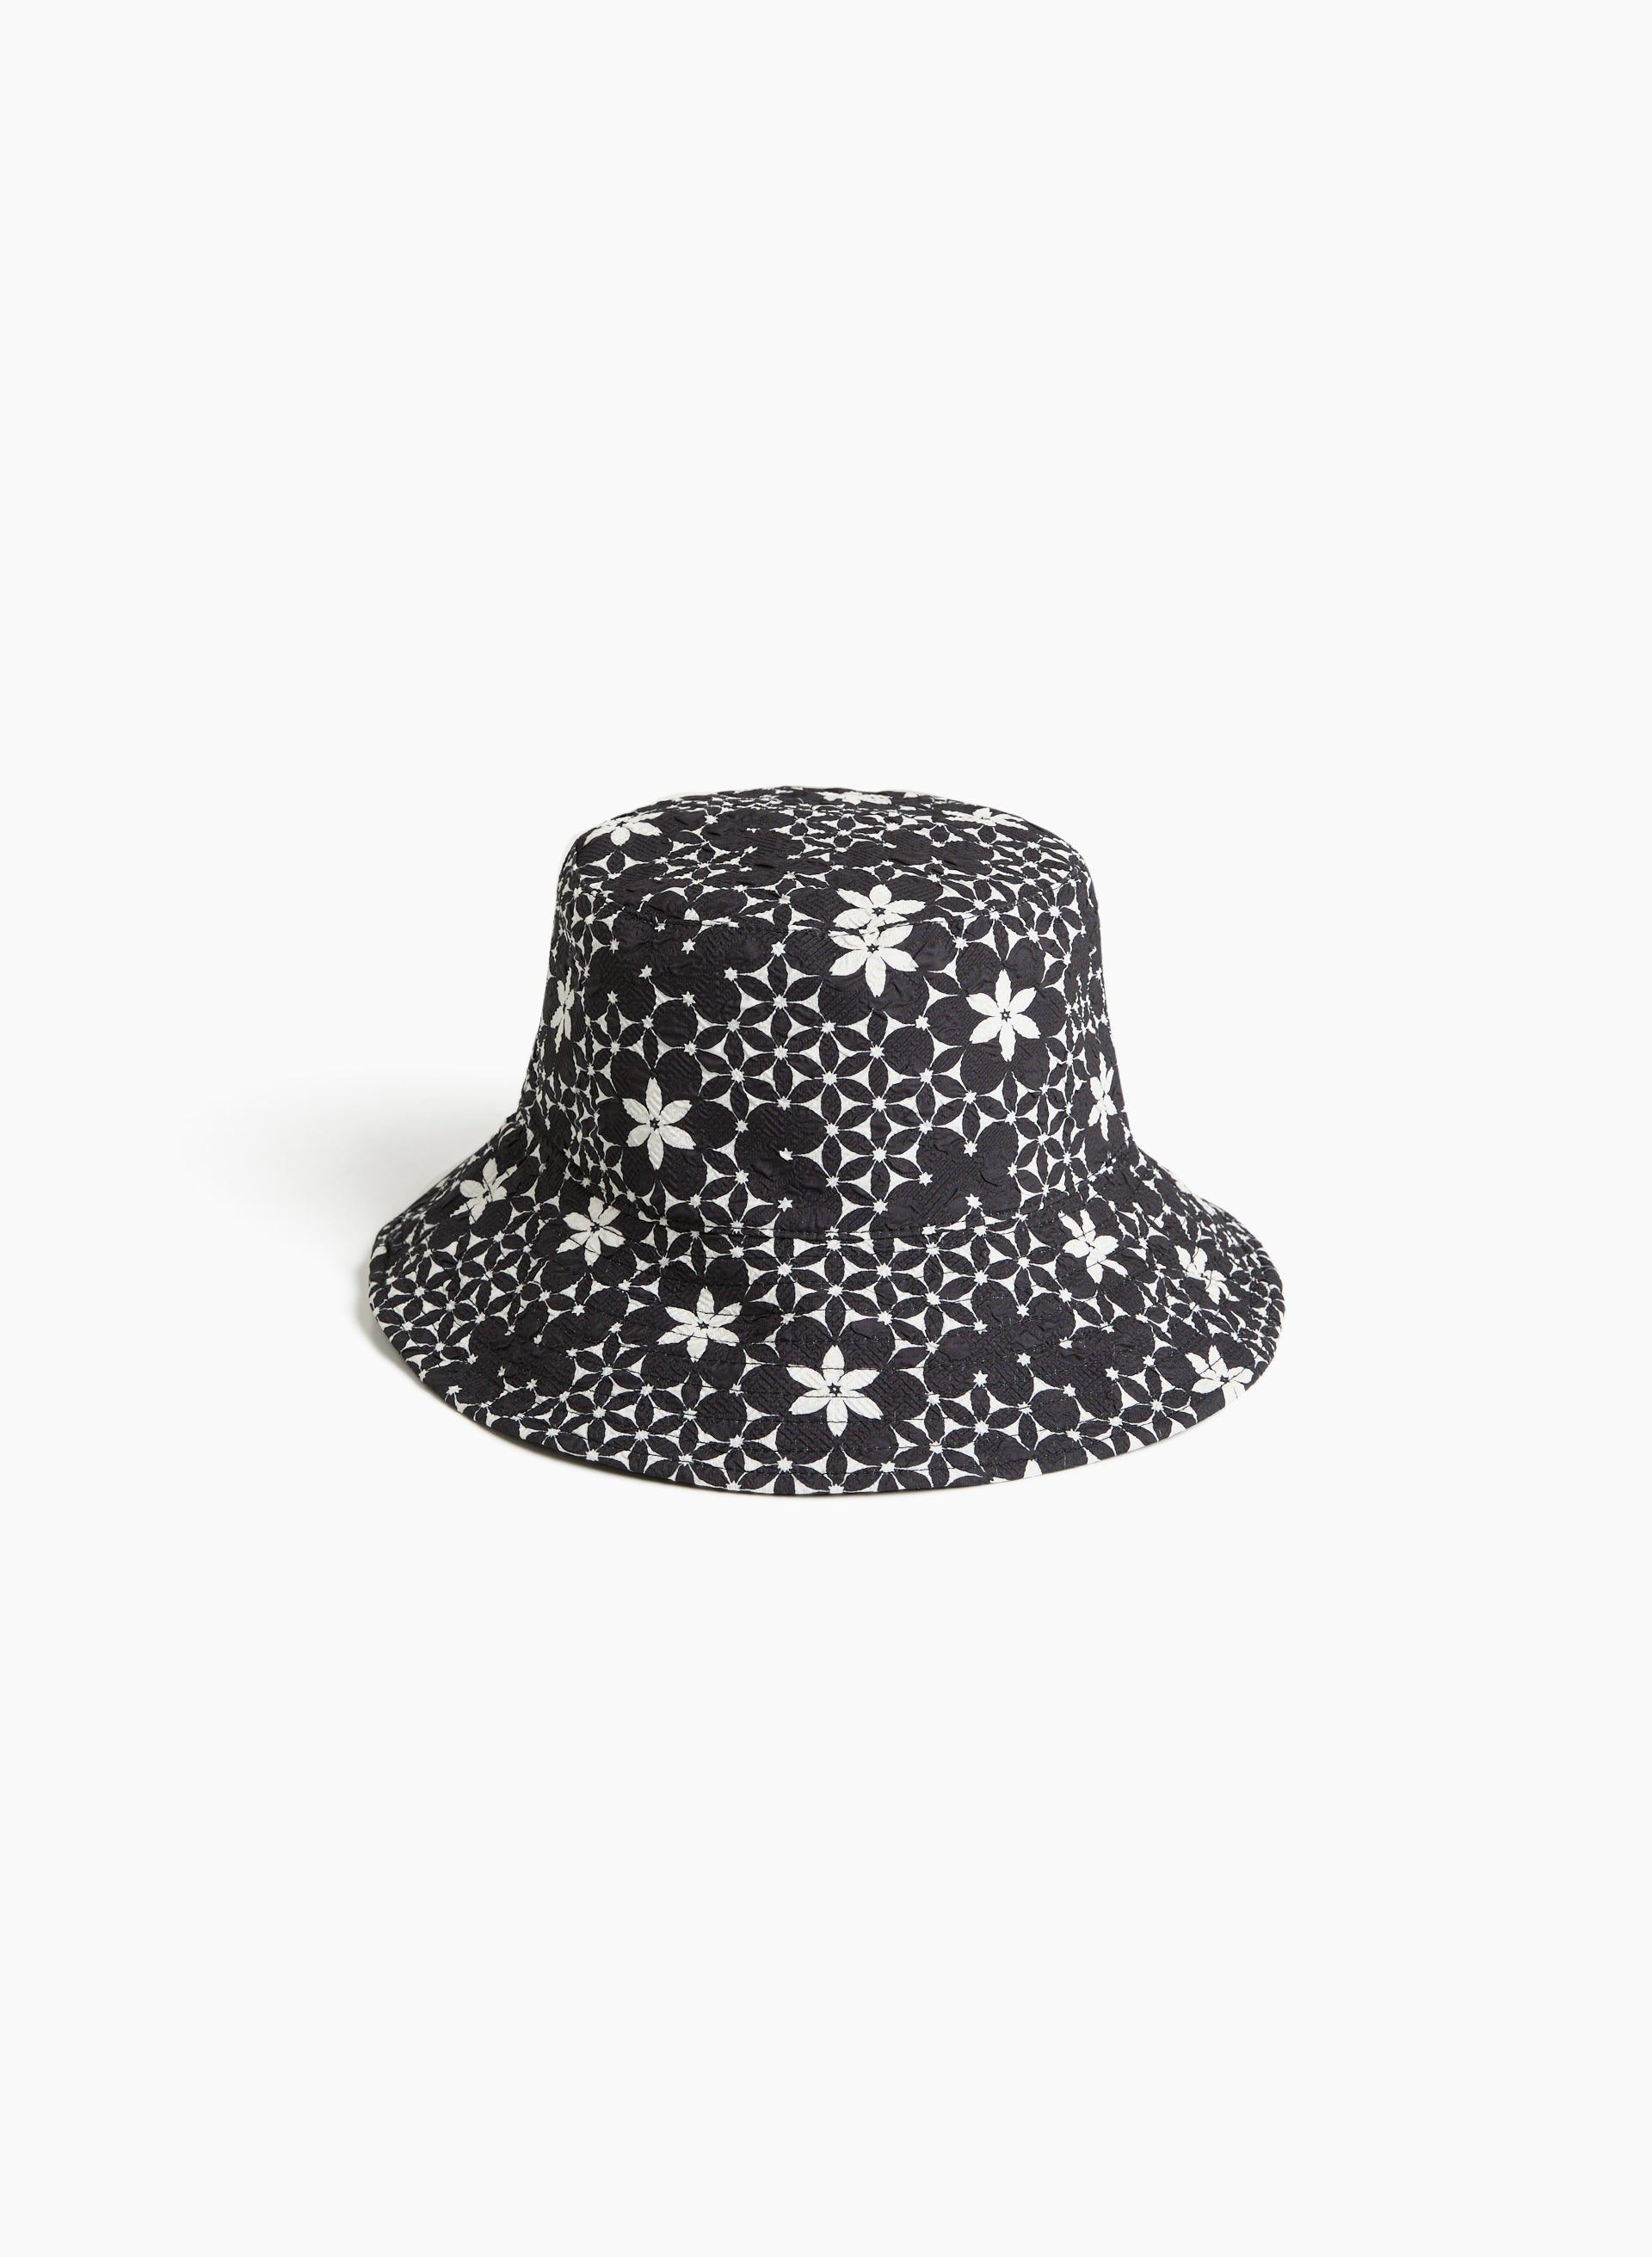 Reversible Printed Bucket Hat